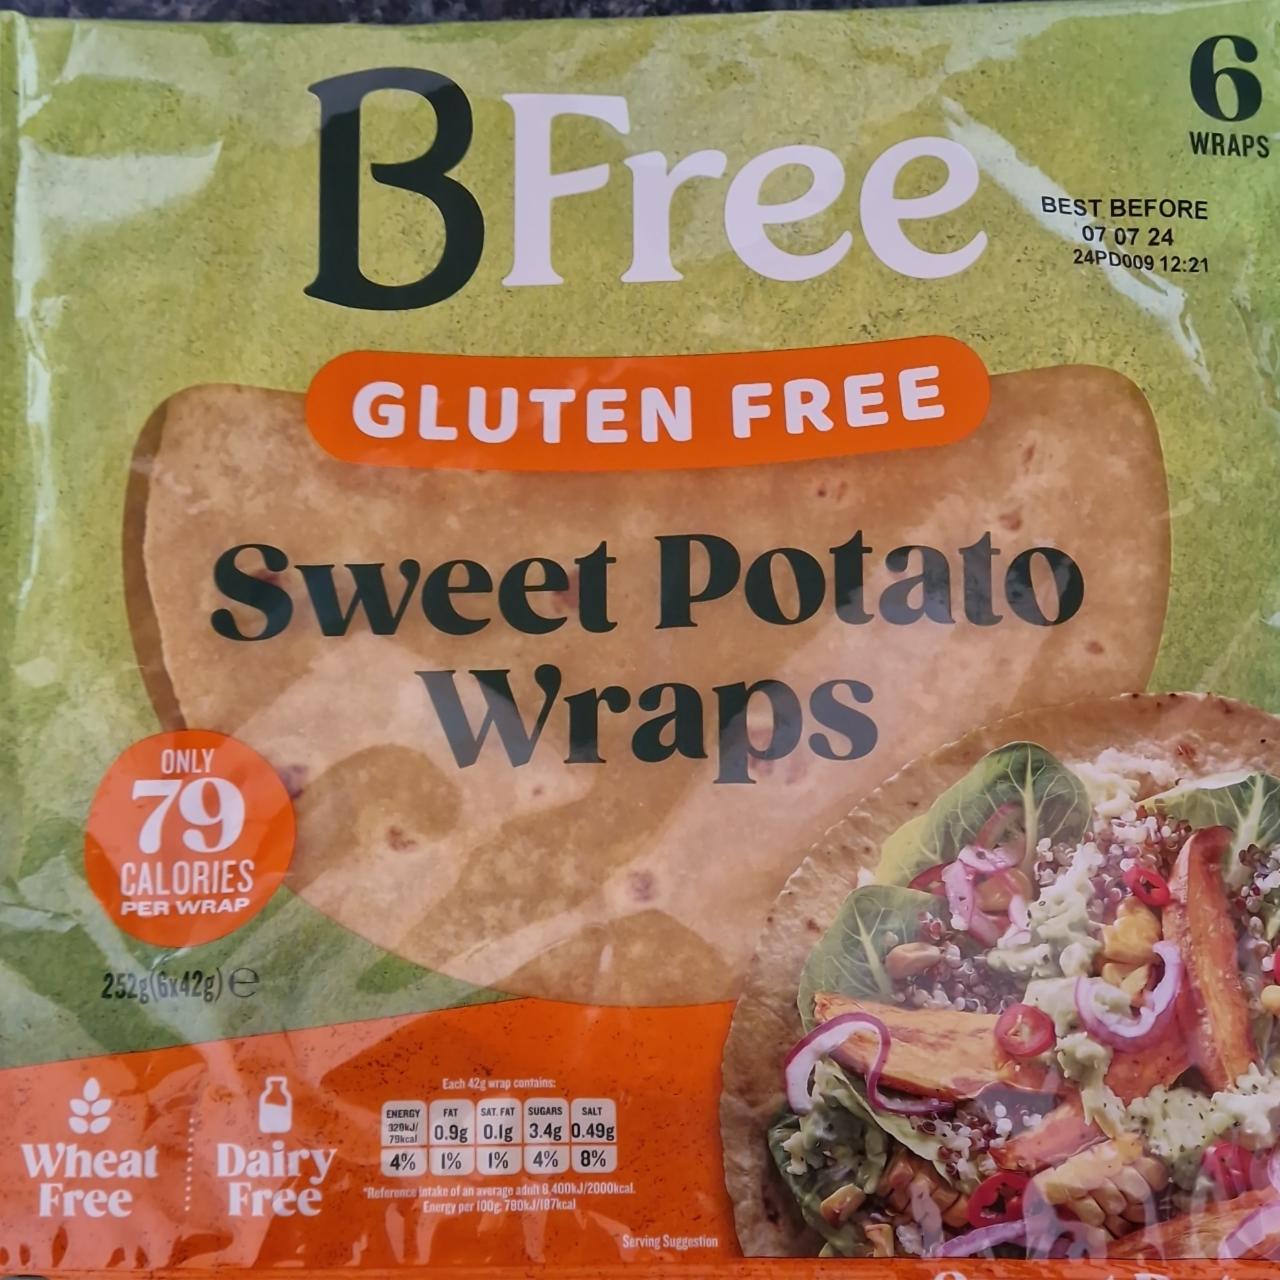 Fotografie - Gluten free Sweet potato wraps Bfree